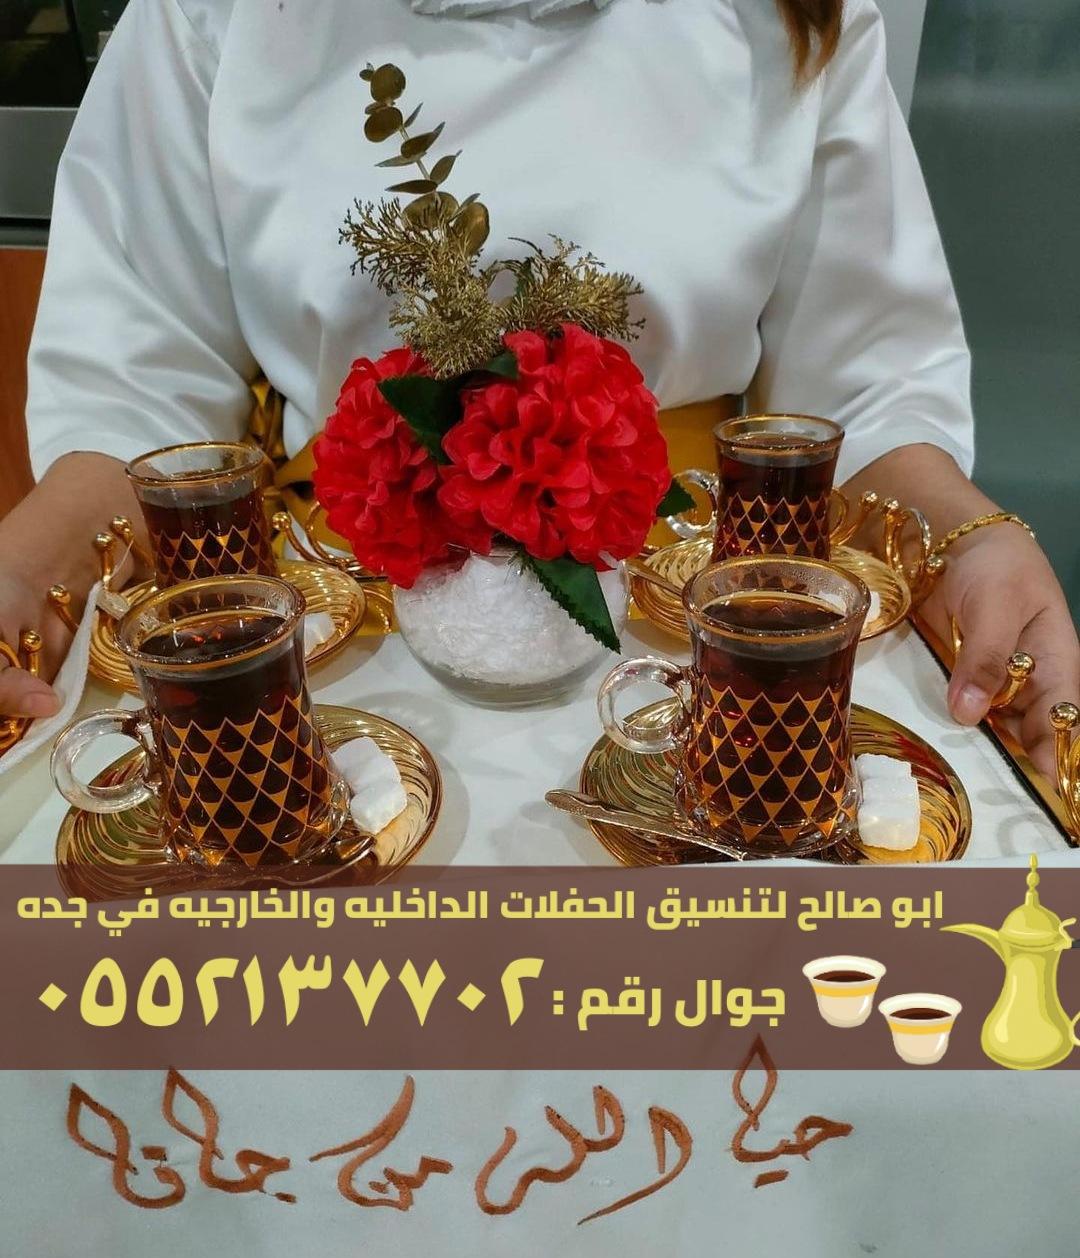 مباشرين القهوة و صبابين في جدة,0552137702 188276558